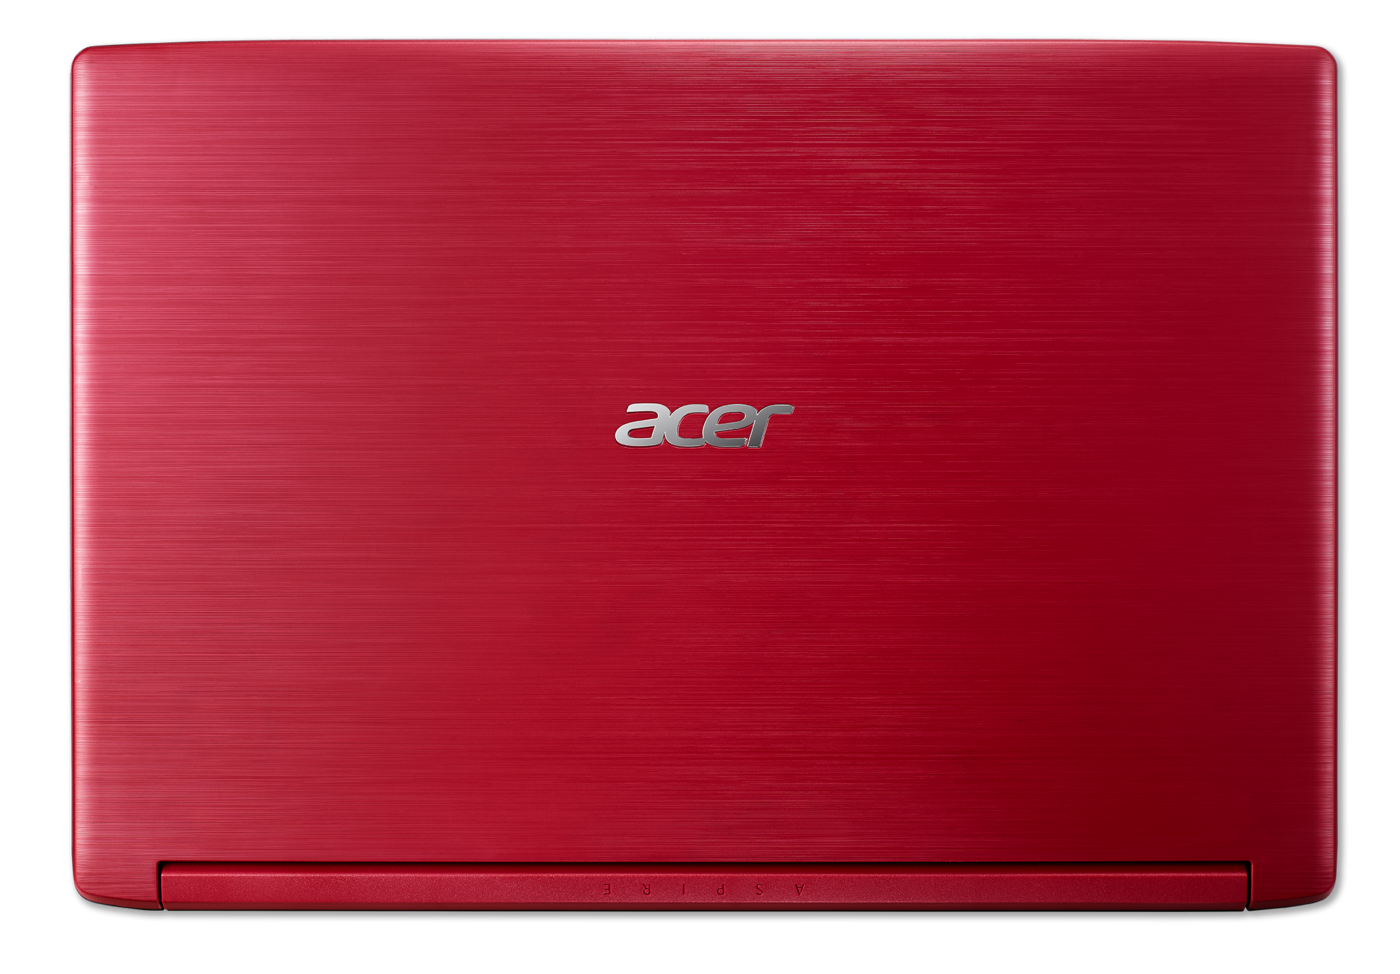 Computador Portátil ACER A315-53-P2DC Intel Pentium 15.6" Pulgadas RAM 4GB Disco Duro 1TB Rojo